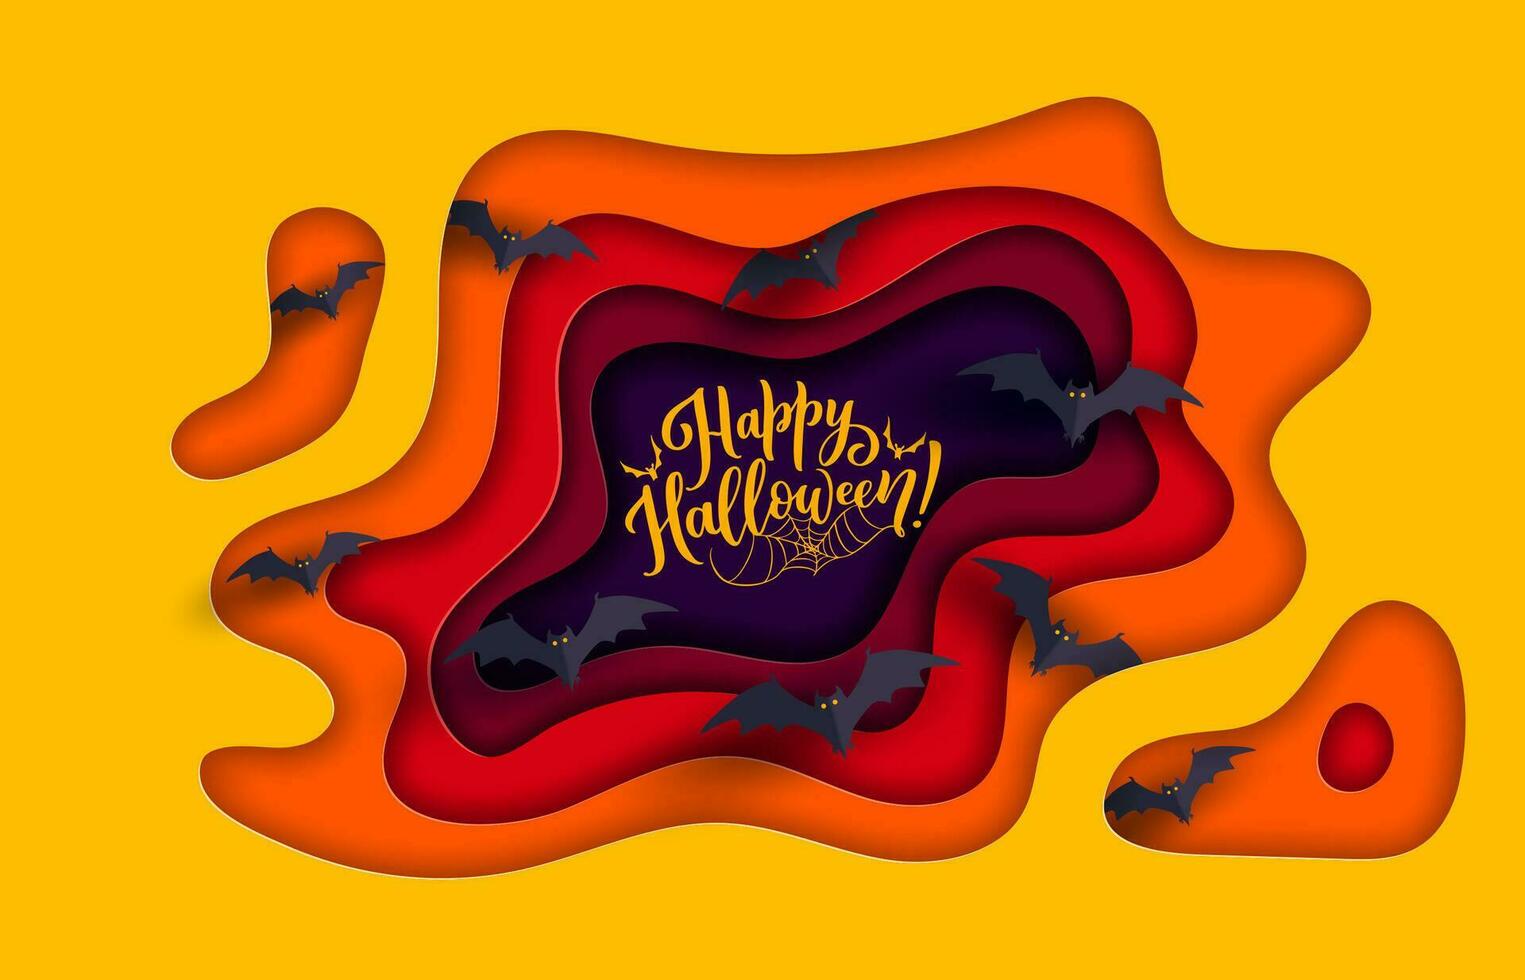 Halloween paper cut banner with bats, spiderweb vector